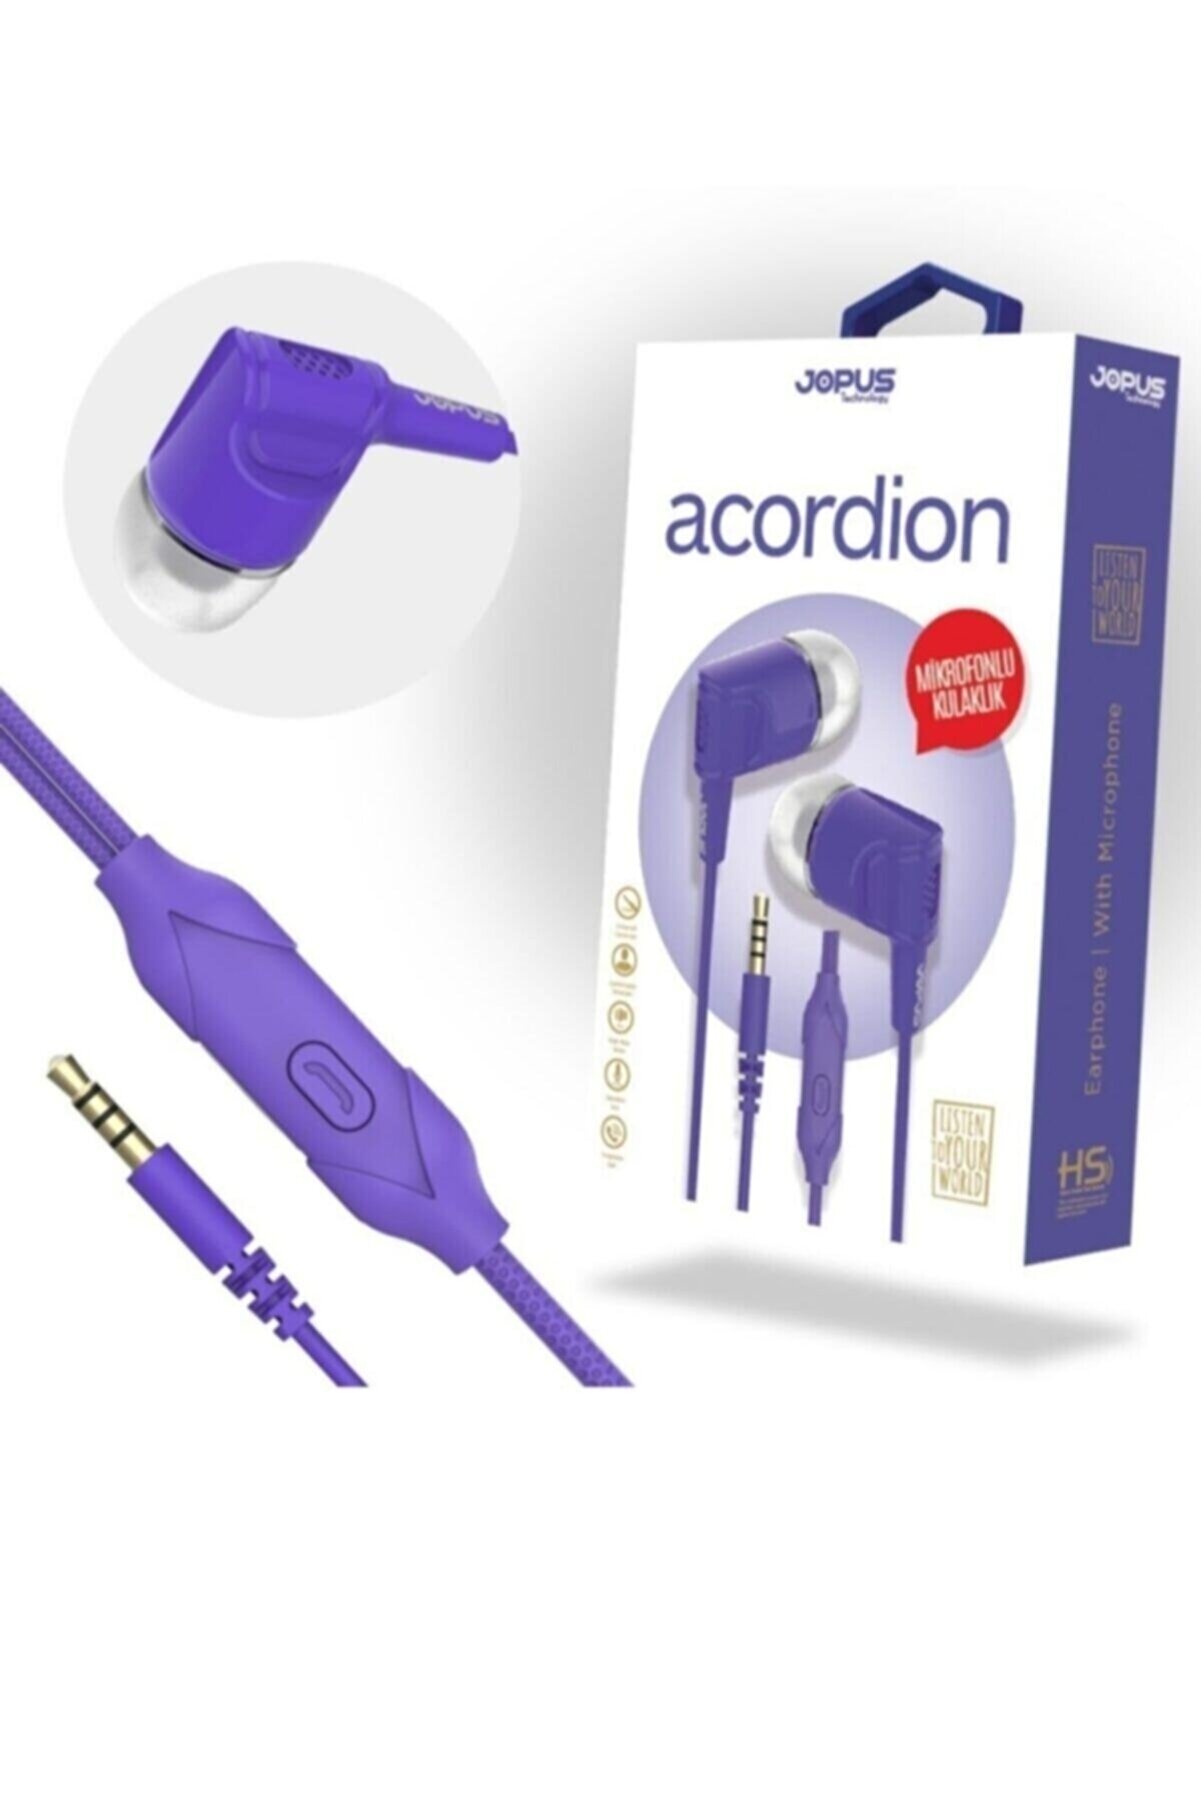 Accordion Mikrofonlu Kulak Içi Kulaklık Tuşlu Silikonlu Mor 3.5mm Universal Jak Giriş Jok52 Yeni_0